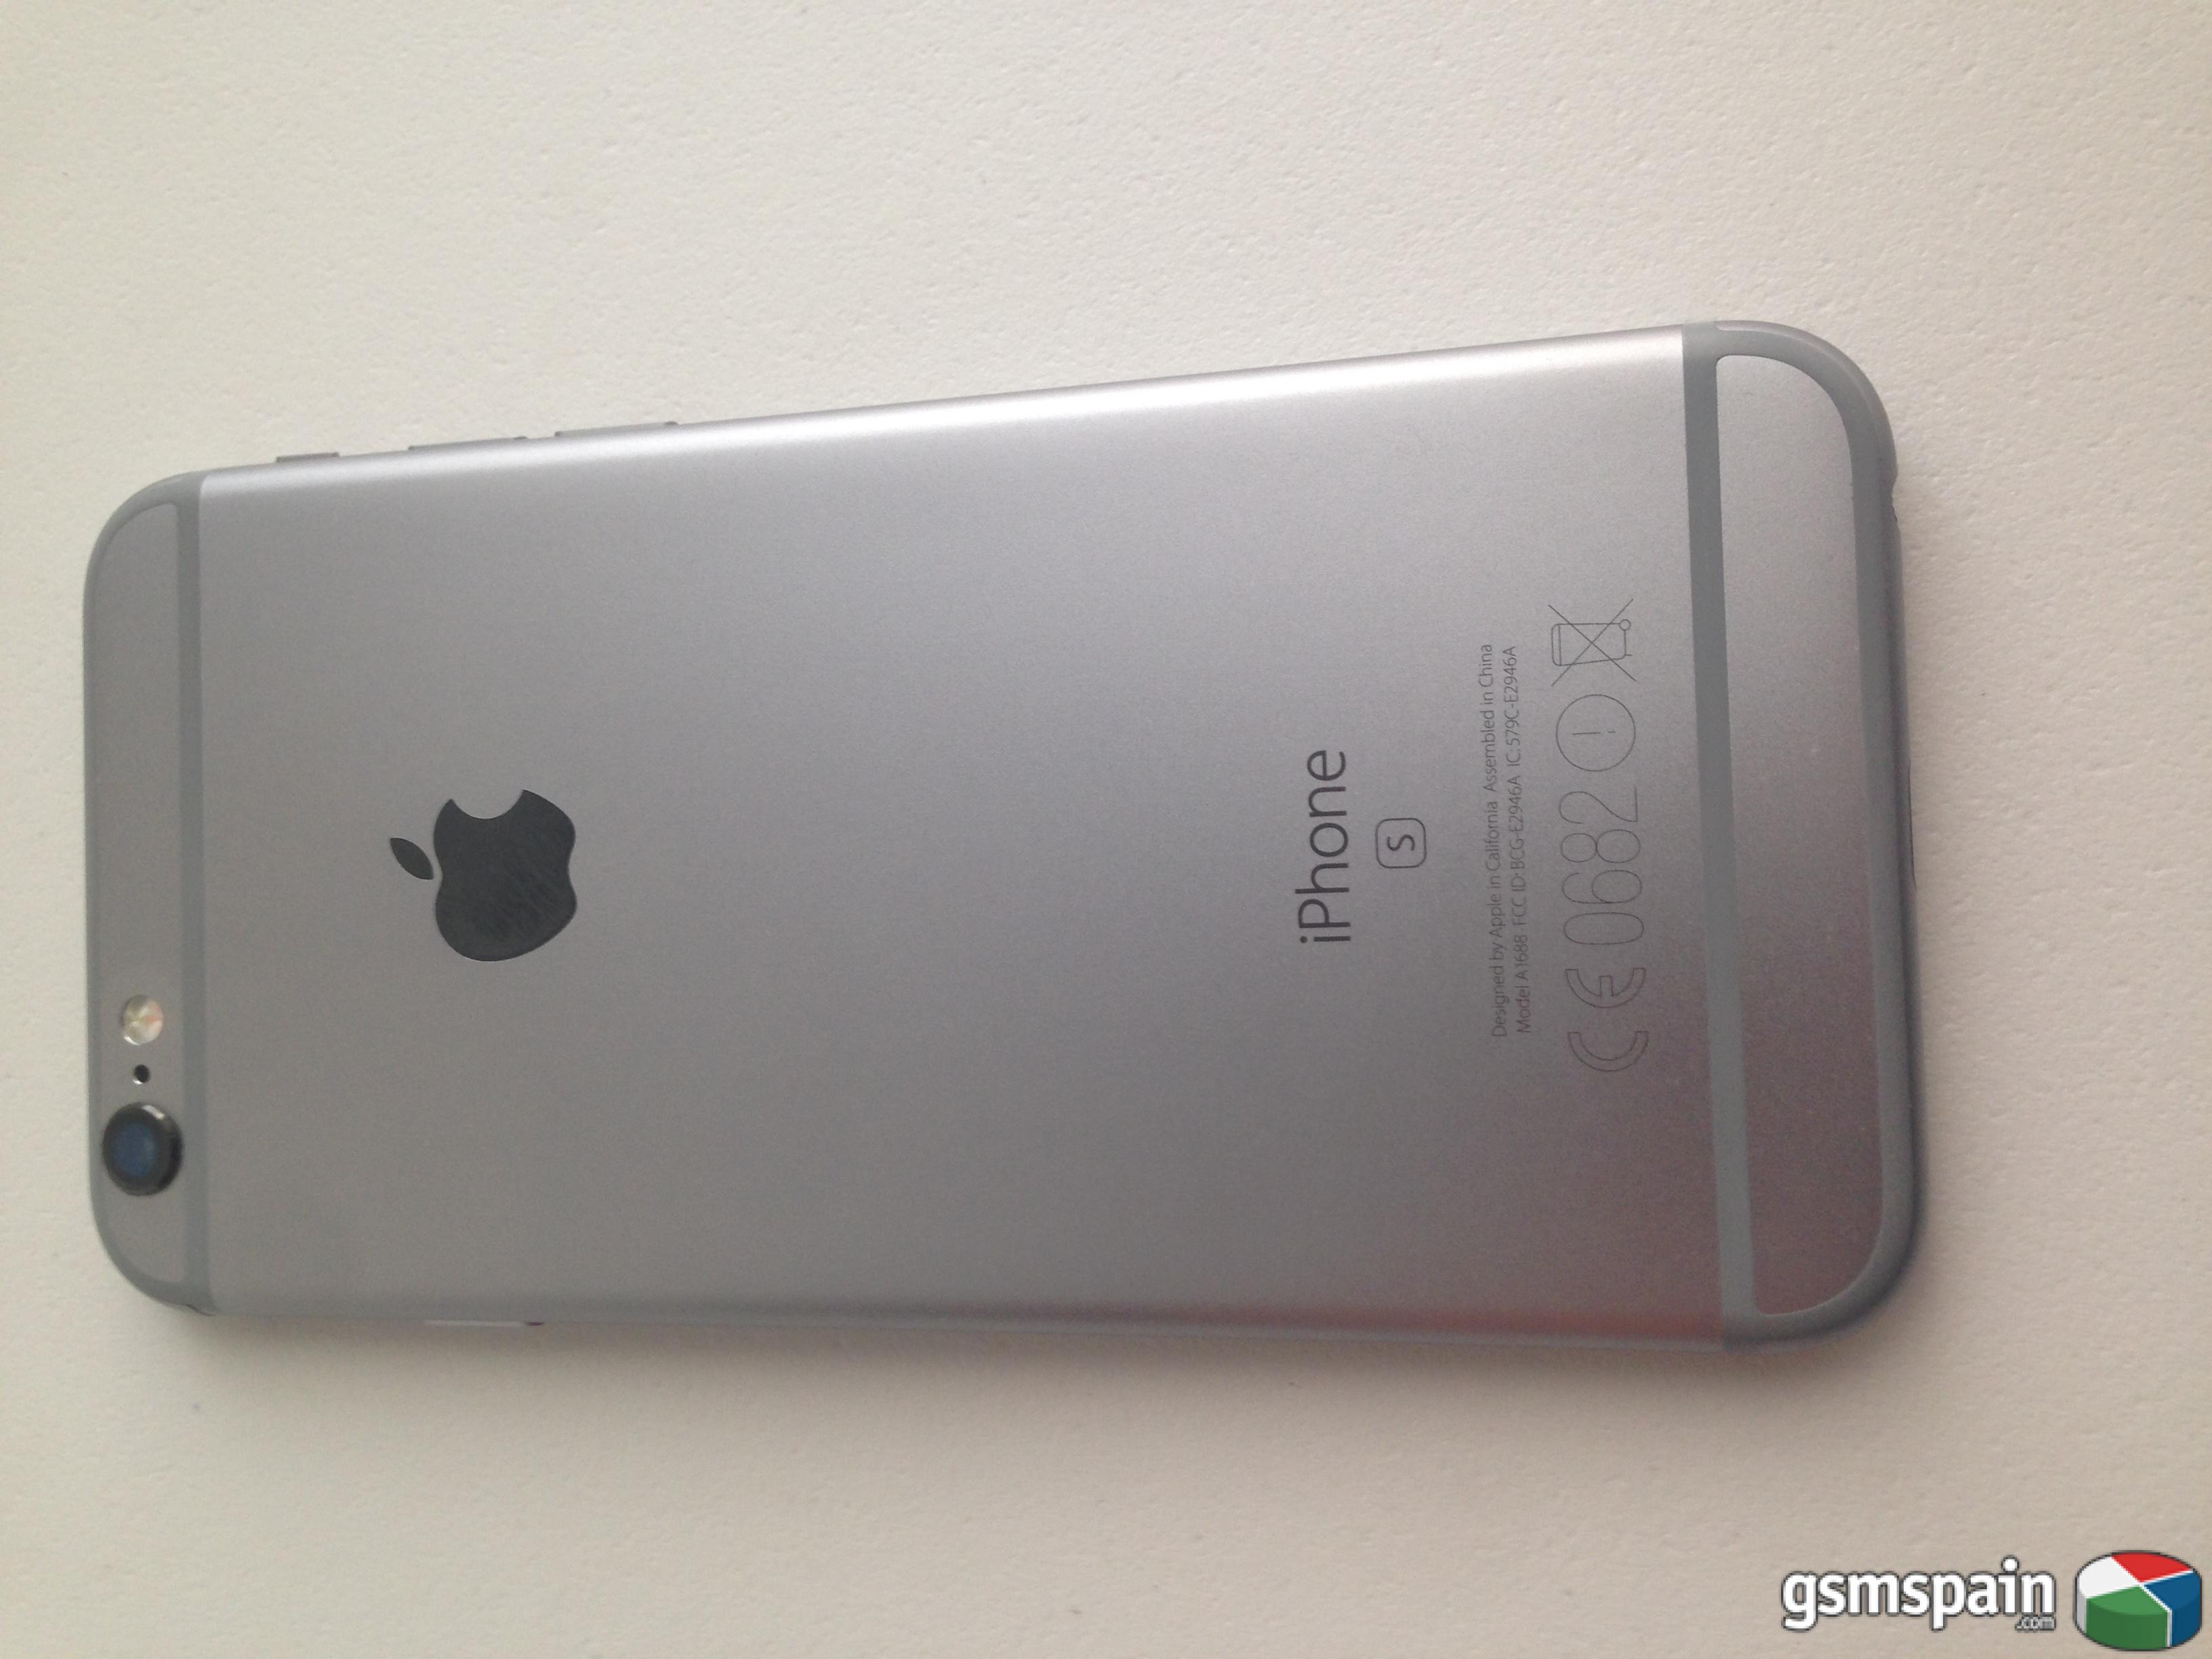 [VENDO] iPhone 6s 16gb silver